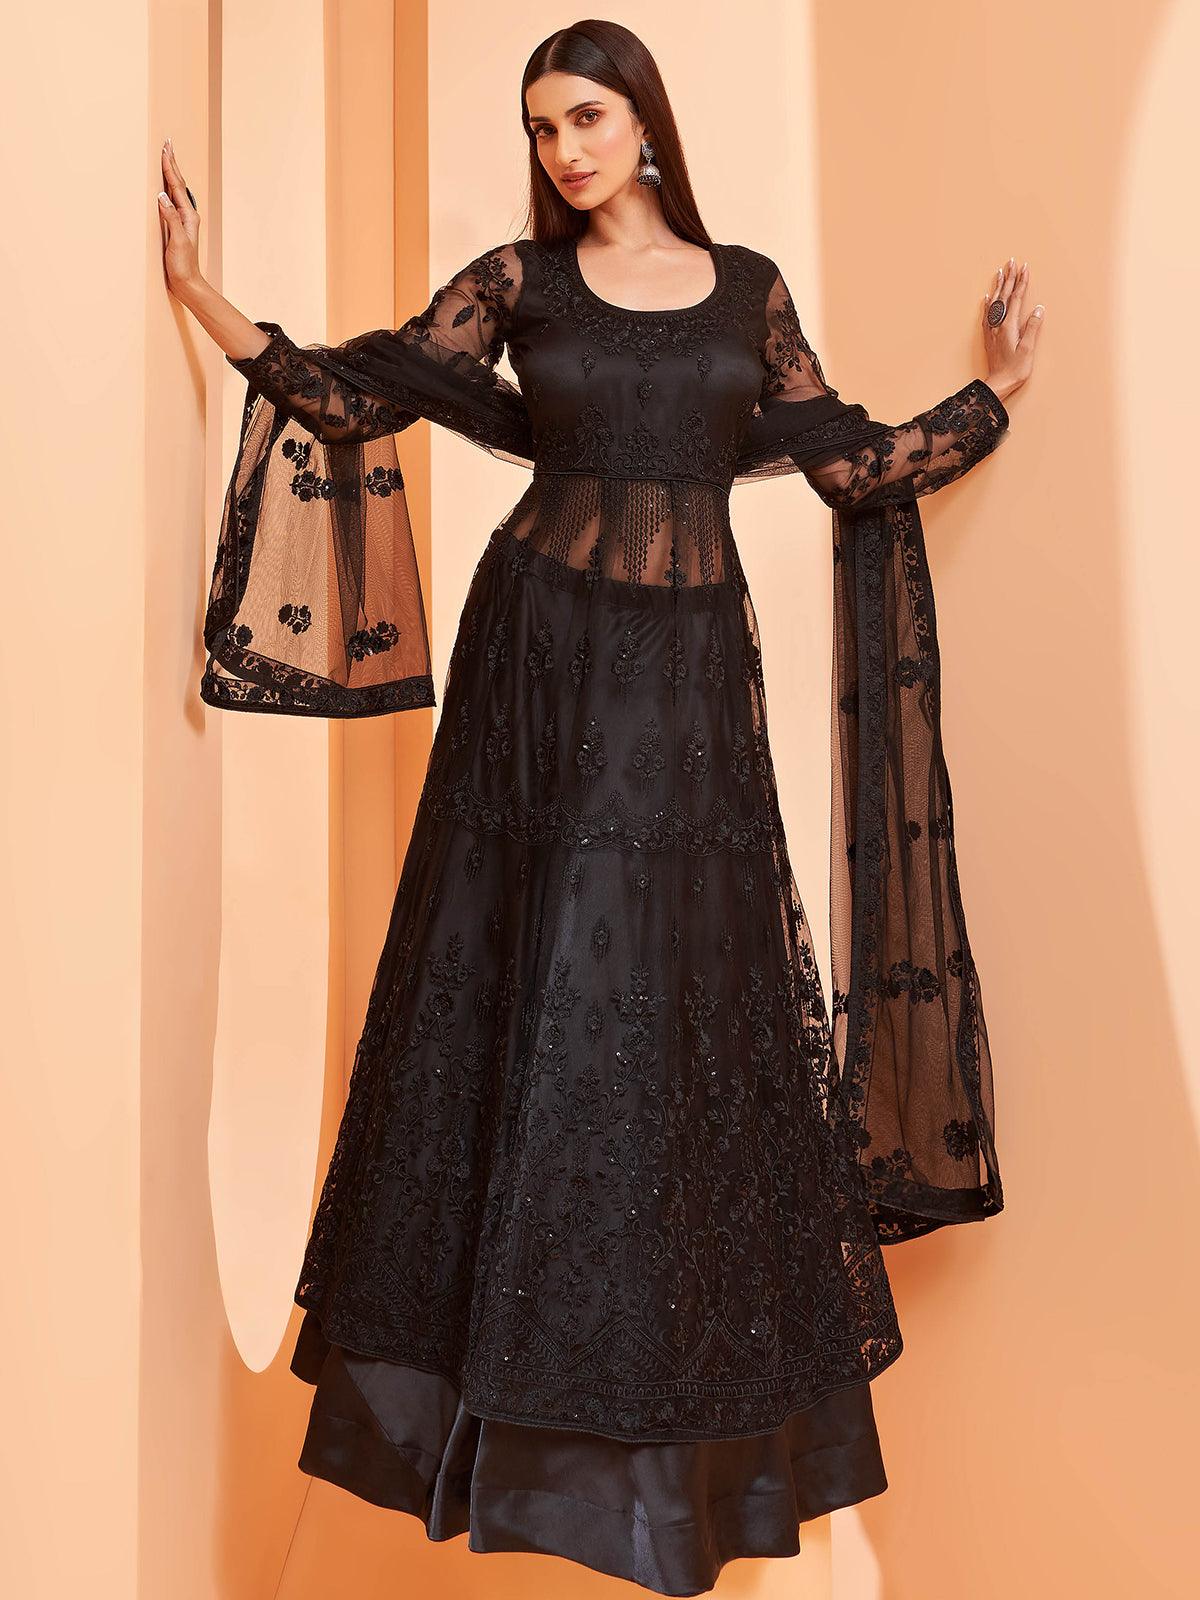 Women's Black Color Net Base Designer Anarkali Suit - Odette